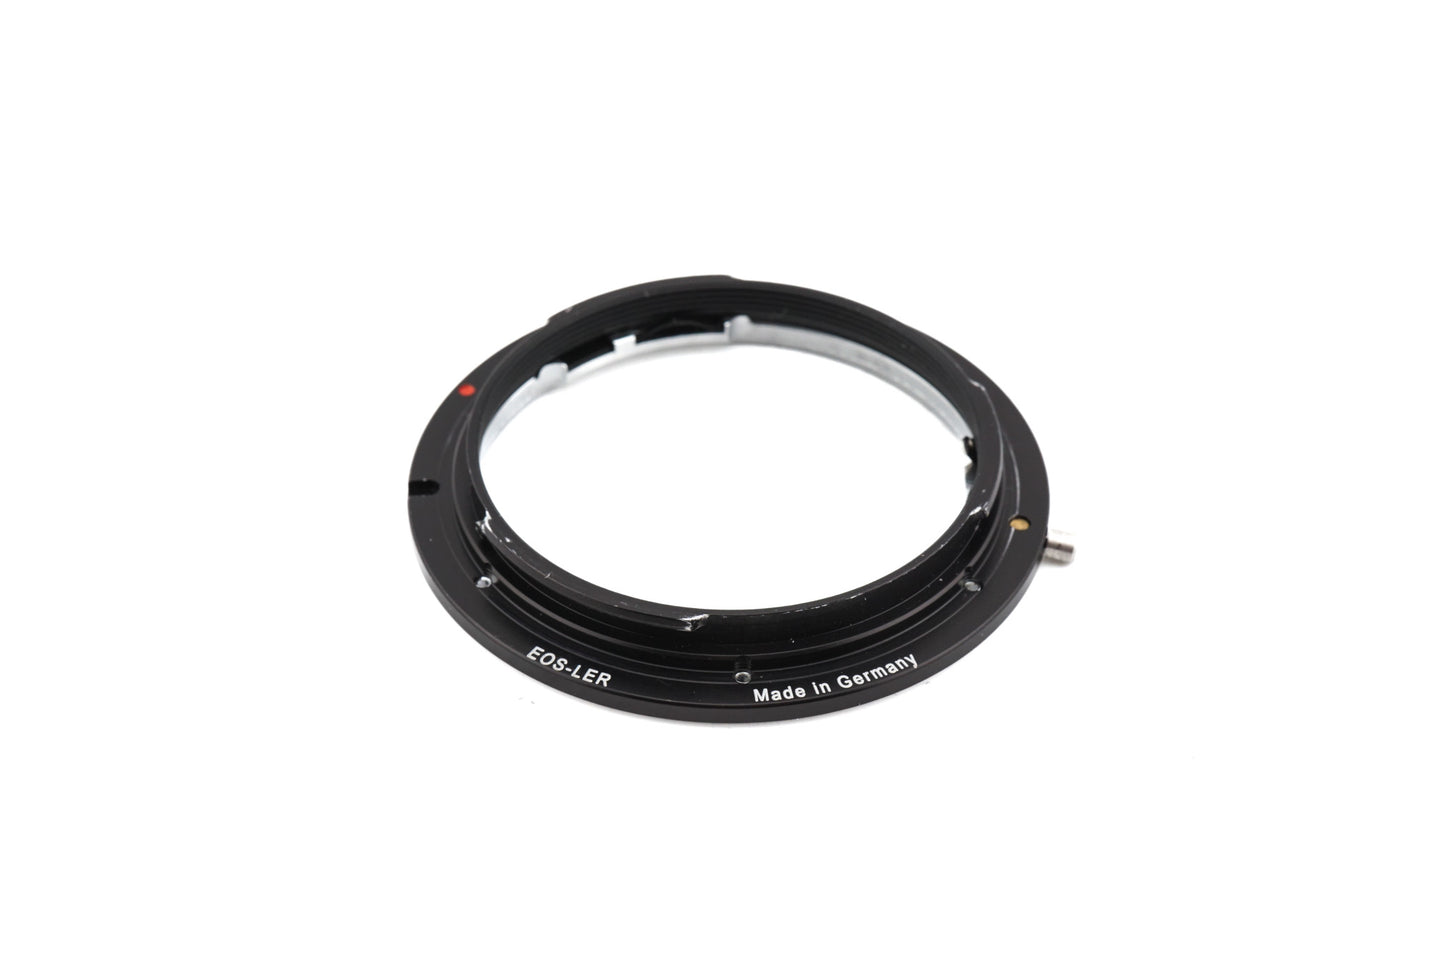 Novoflex Leica R - Canon EF (EOS-LER) Adapter - Lens Adapter